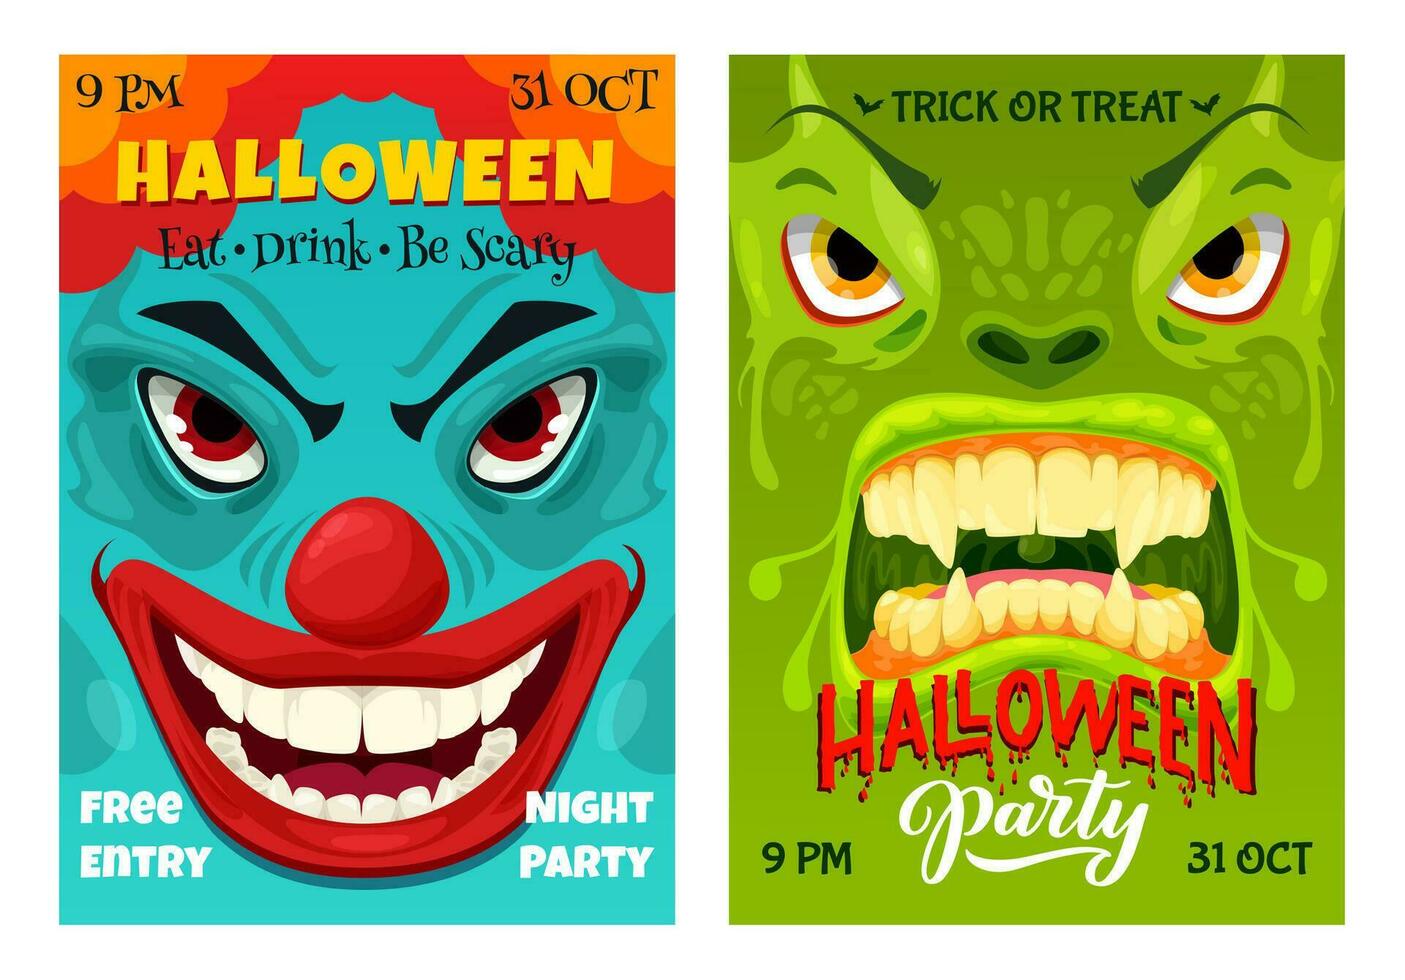 Halloween party flyer, cartoon monster characters vector